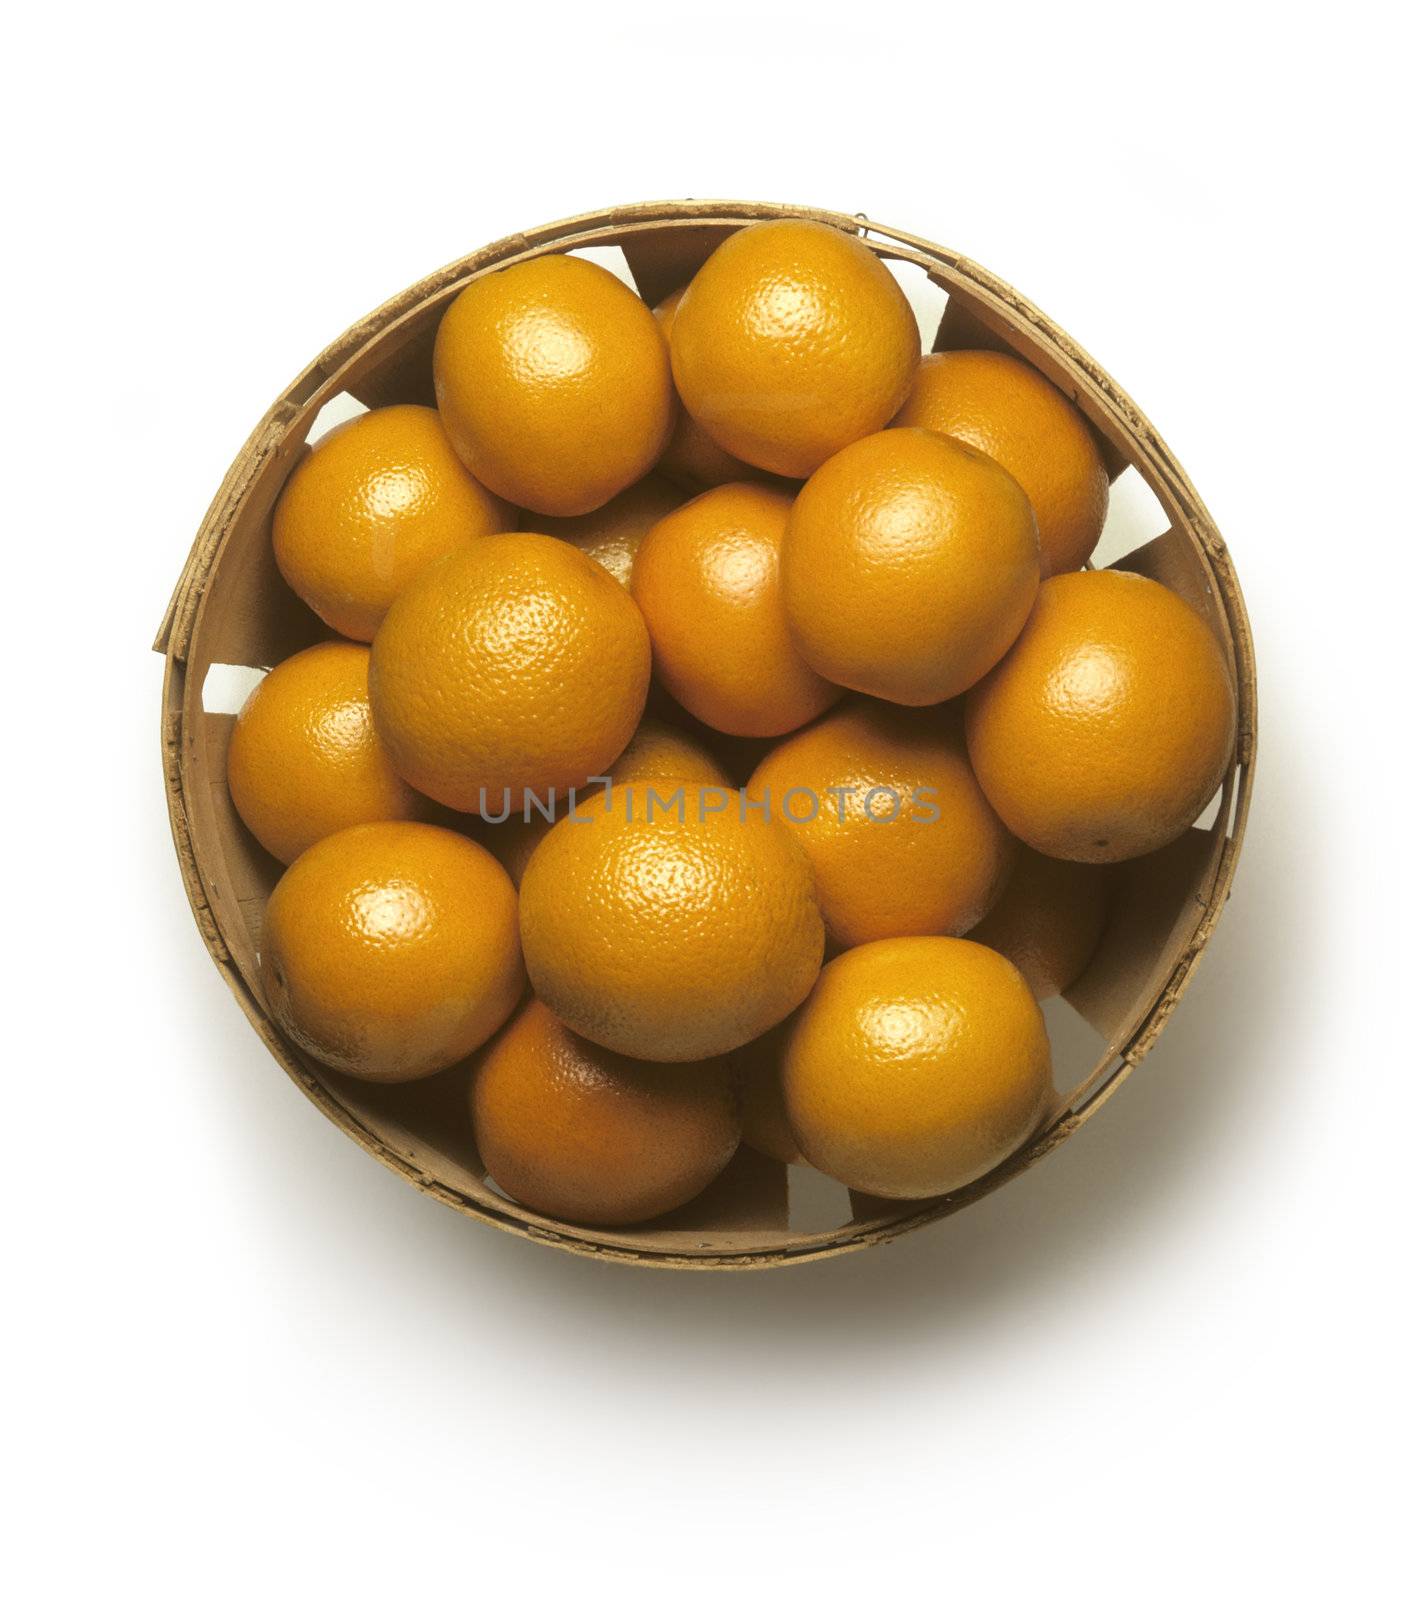 Bushel basket of fresh California oranges on a white background